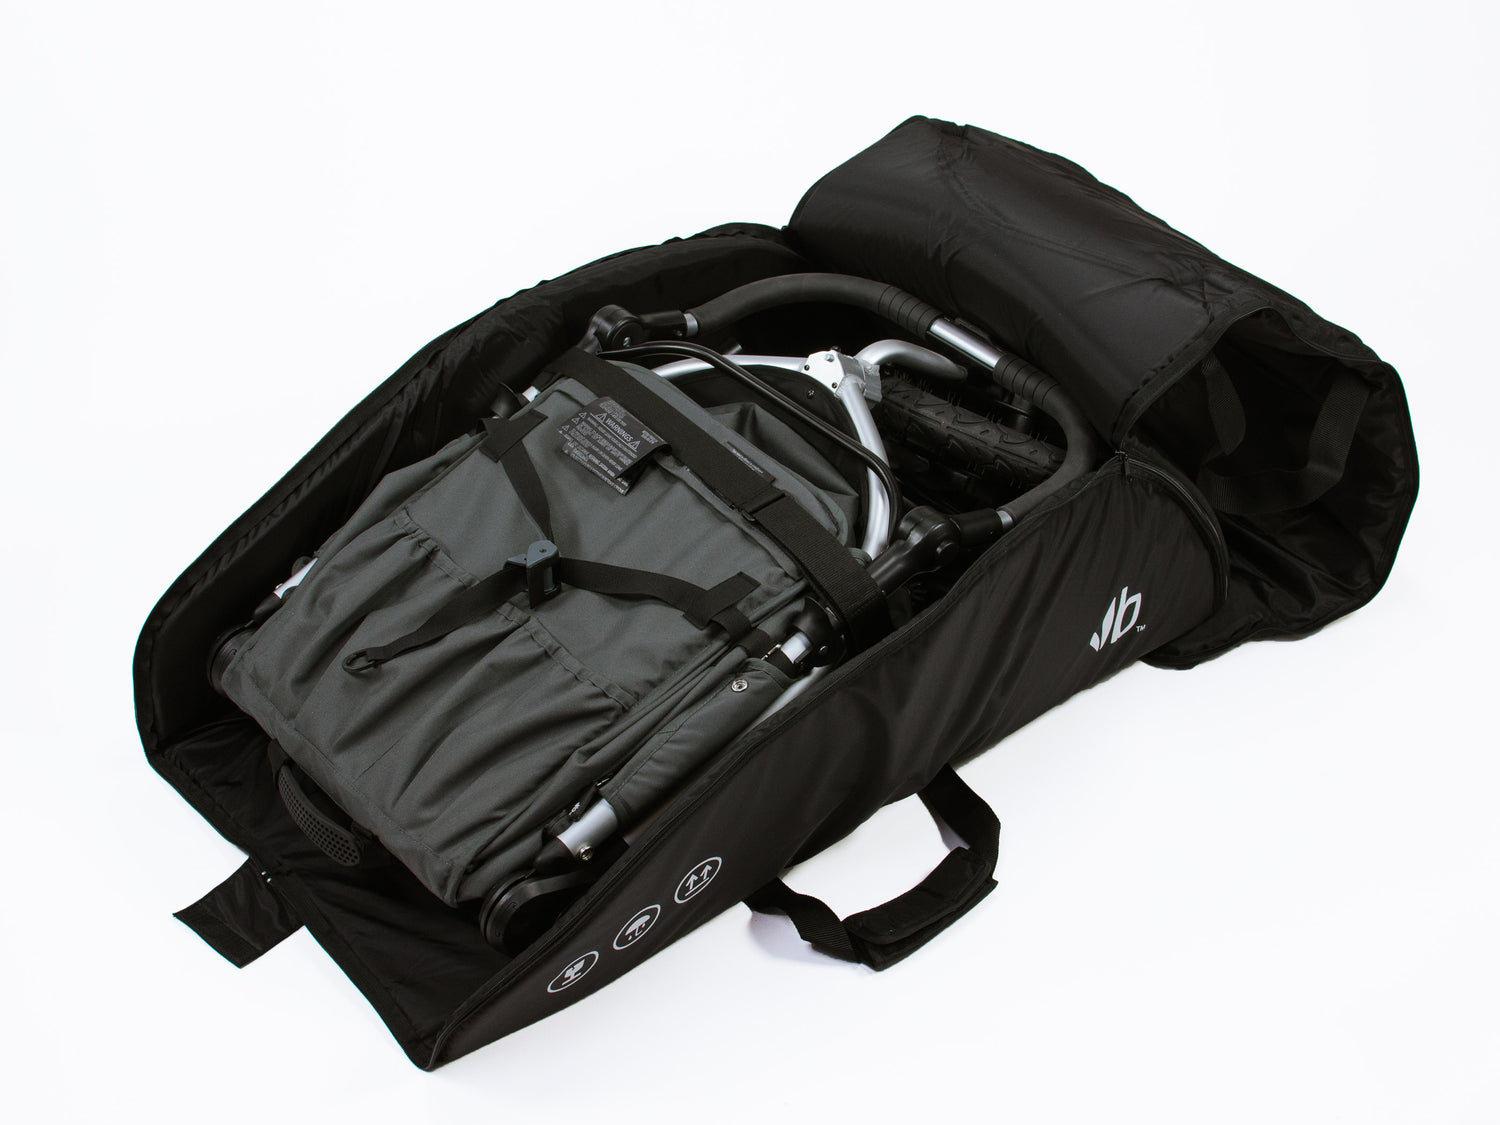 padded stroller travel bag